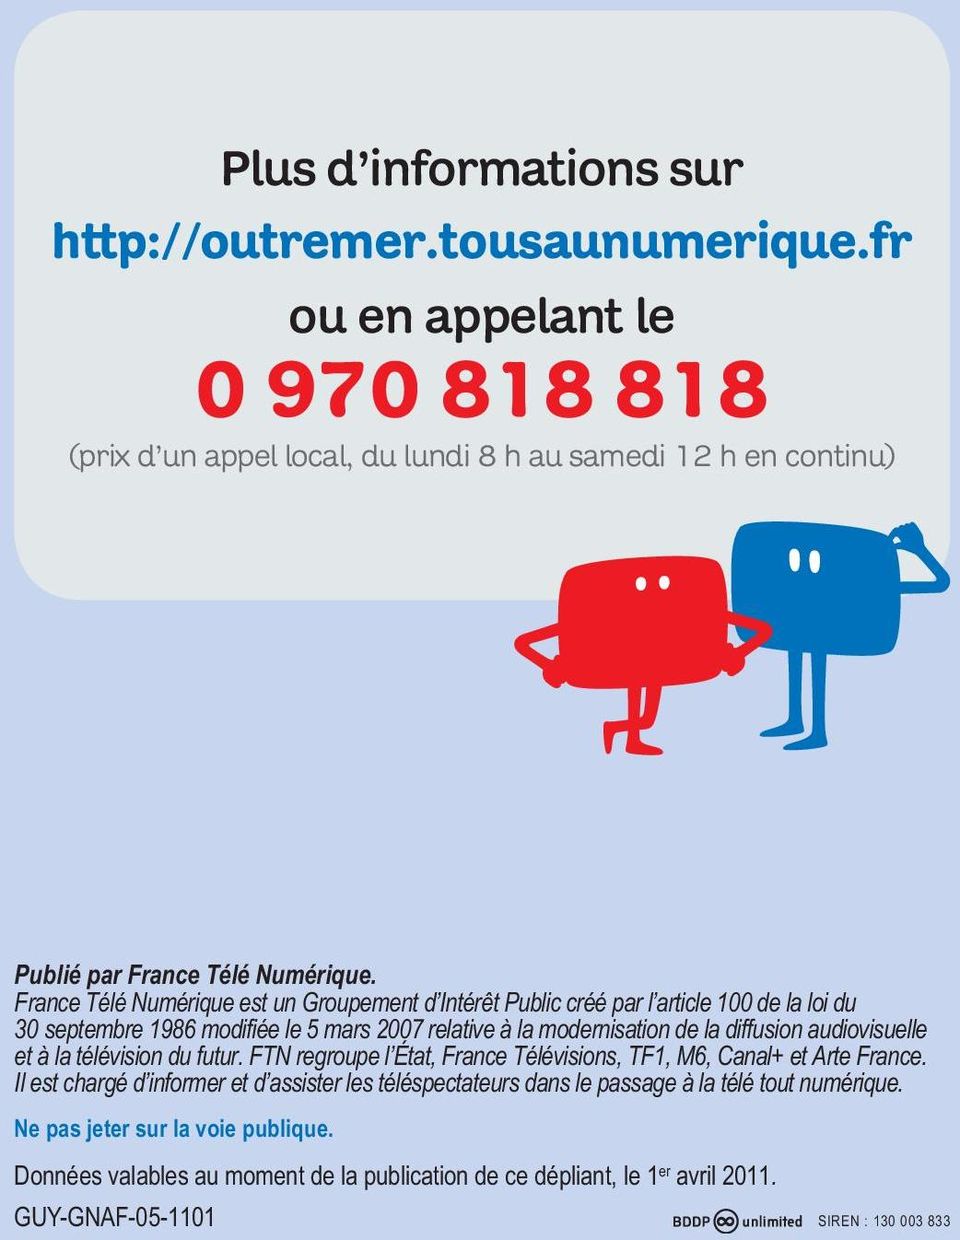 France Télé Numérique est un Groupement d Intérêt Public créé par l article 100 de la loi du 30 septembre 1986 modifiée le 5 mars 2007 relative à la modernisation de la diffusion